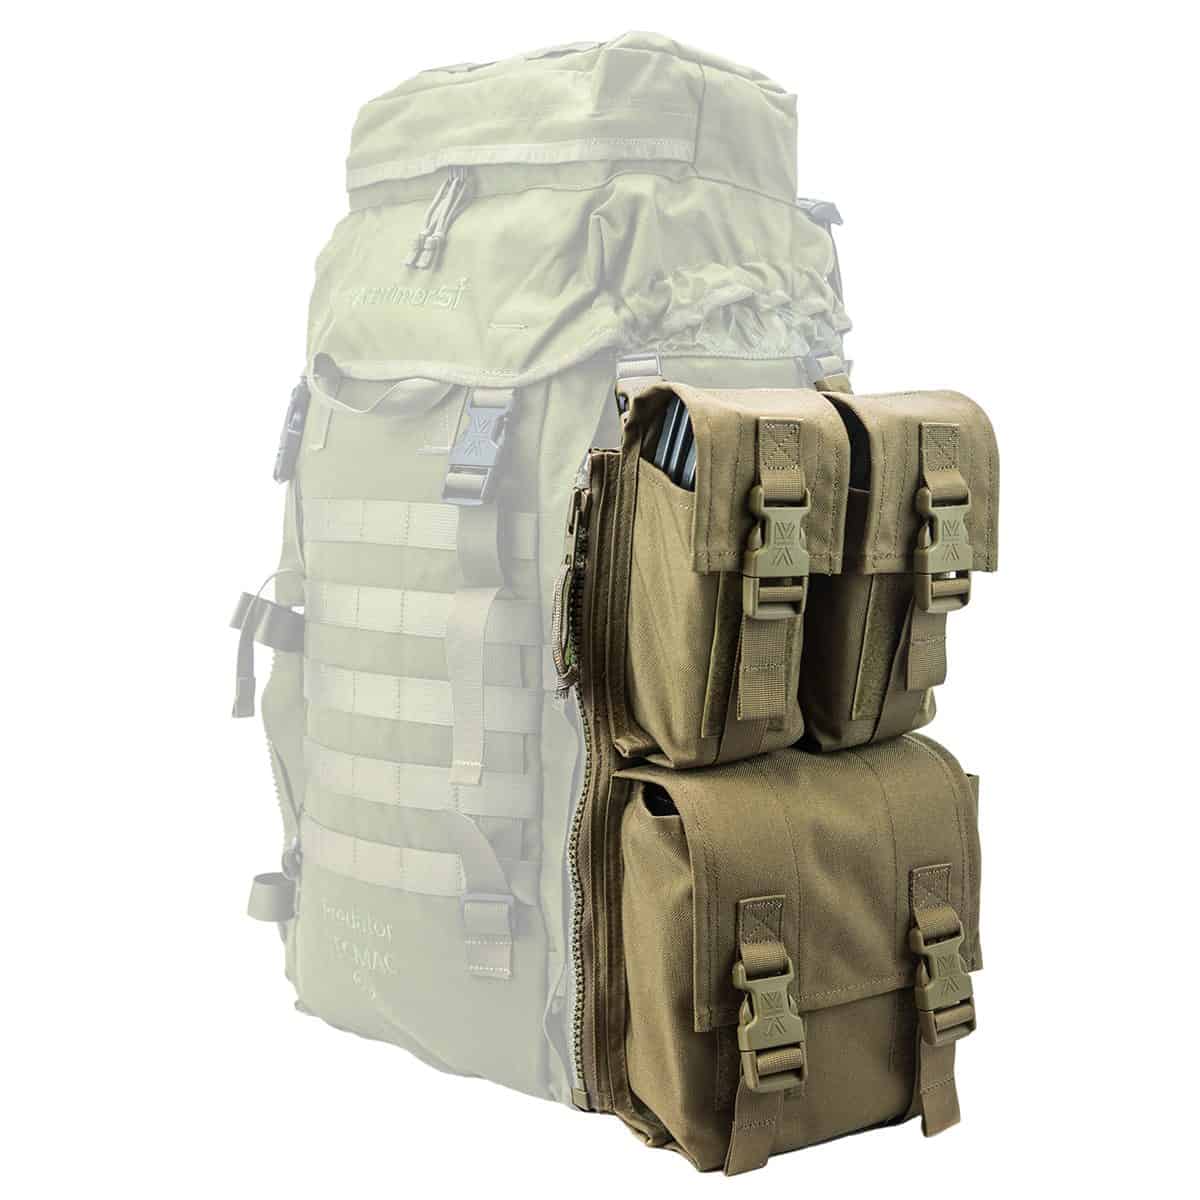 Izberite stransko vojaško torbo Predator PLCE od Karrimor SF, kompatibilno z vsemi PLCE nahrbtniki. Vrhunska kakovost, praktičnost in taktični dizajn za vojaško opremo. Kupite na spletu zdaj!